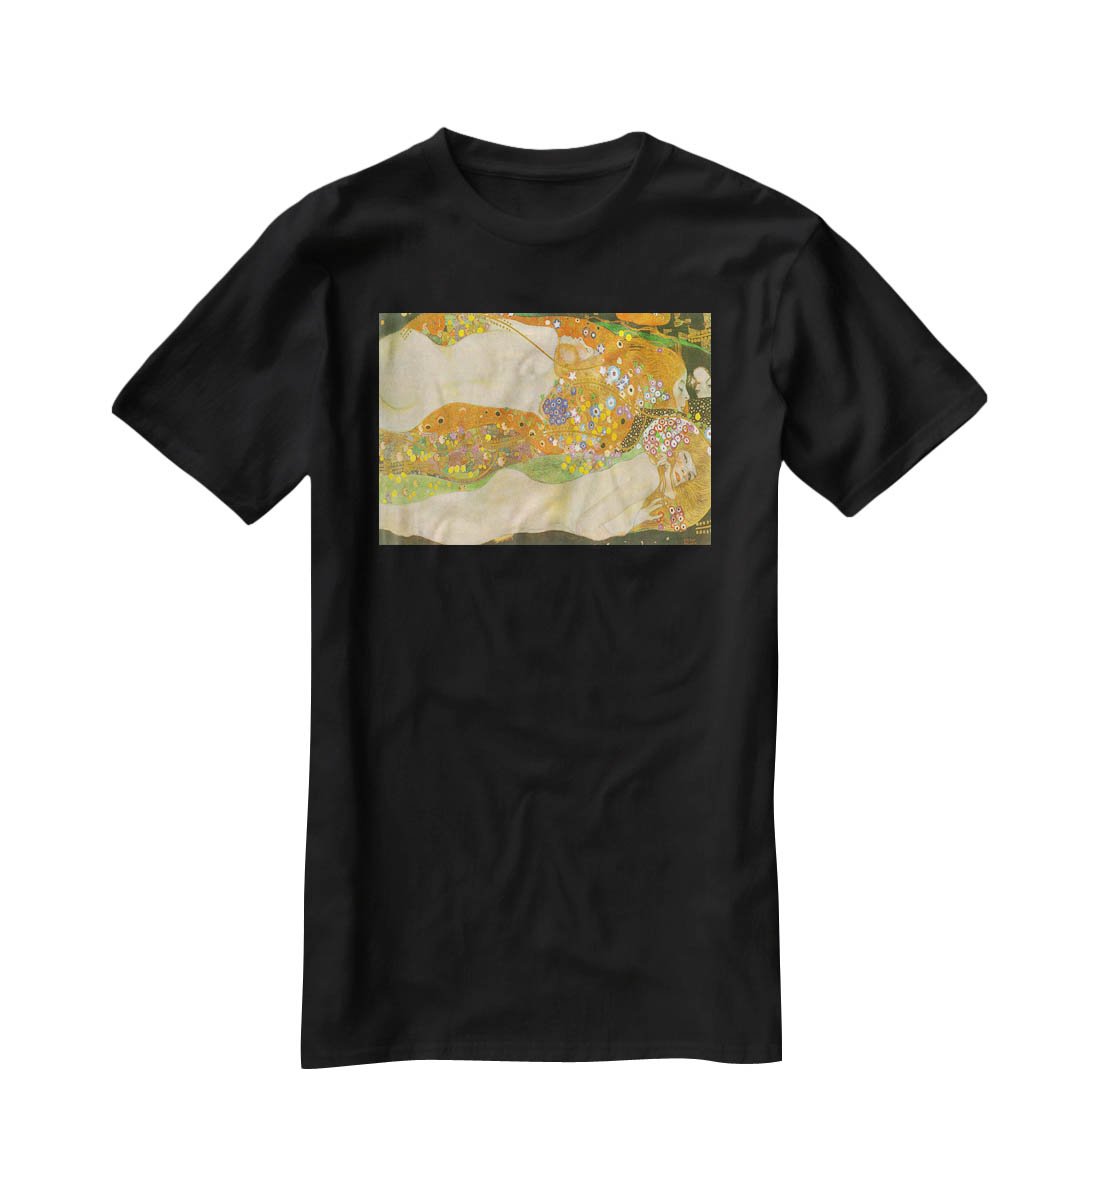 Water snakes friends II by Klimt T-Shirt - Canvas Art Rocks - 1